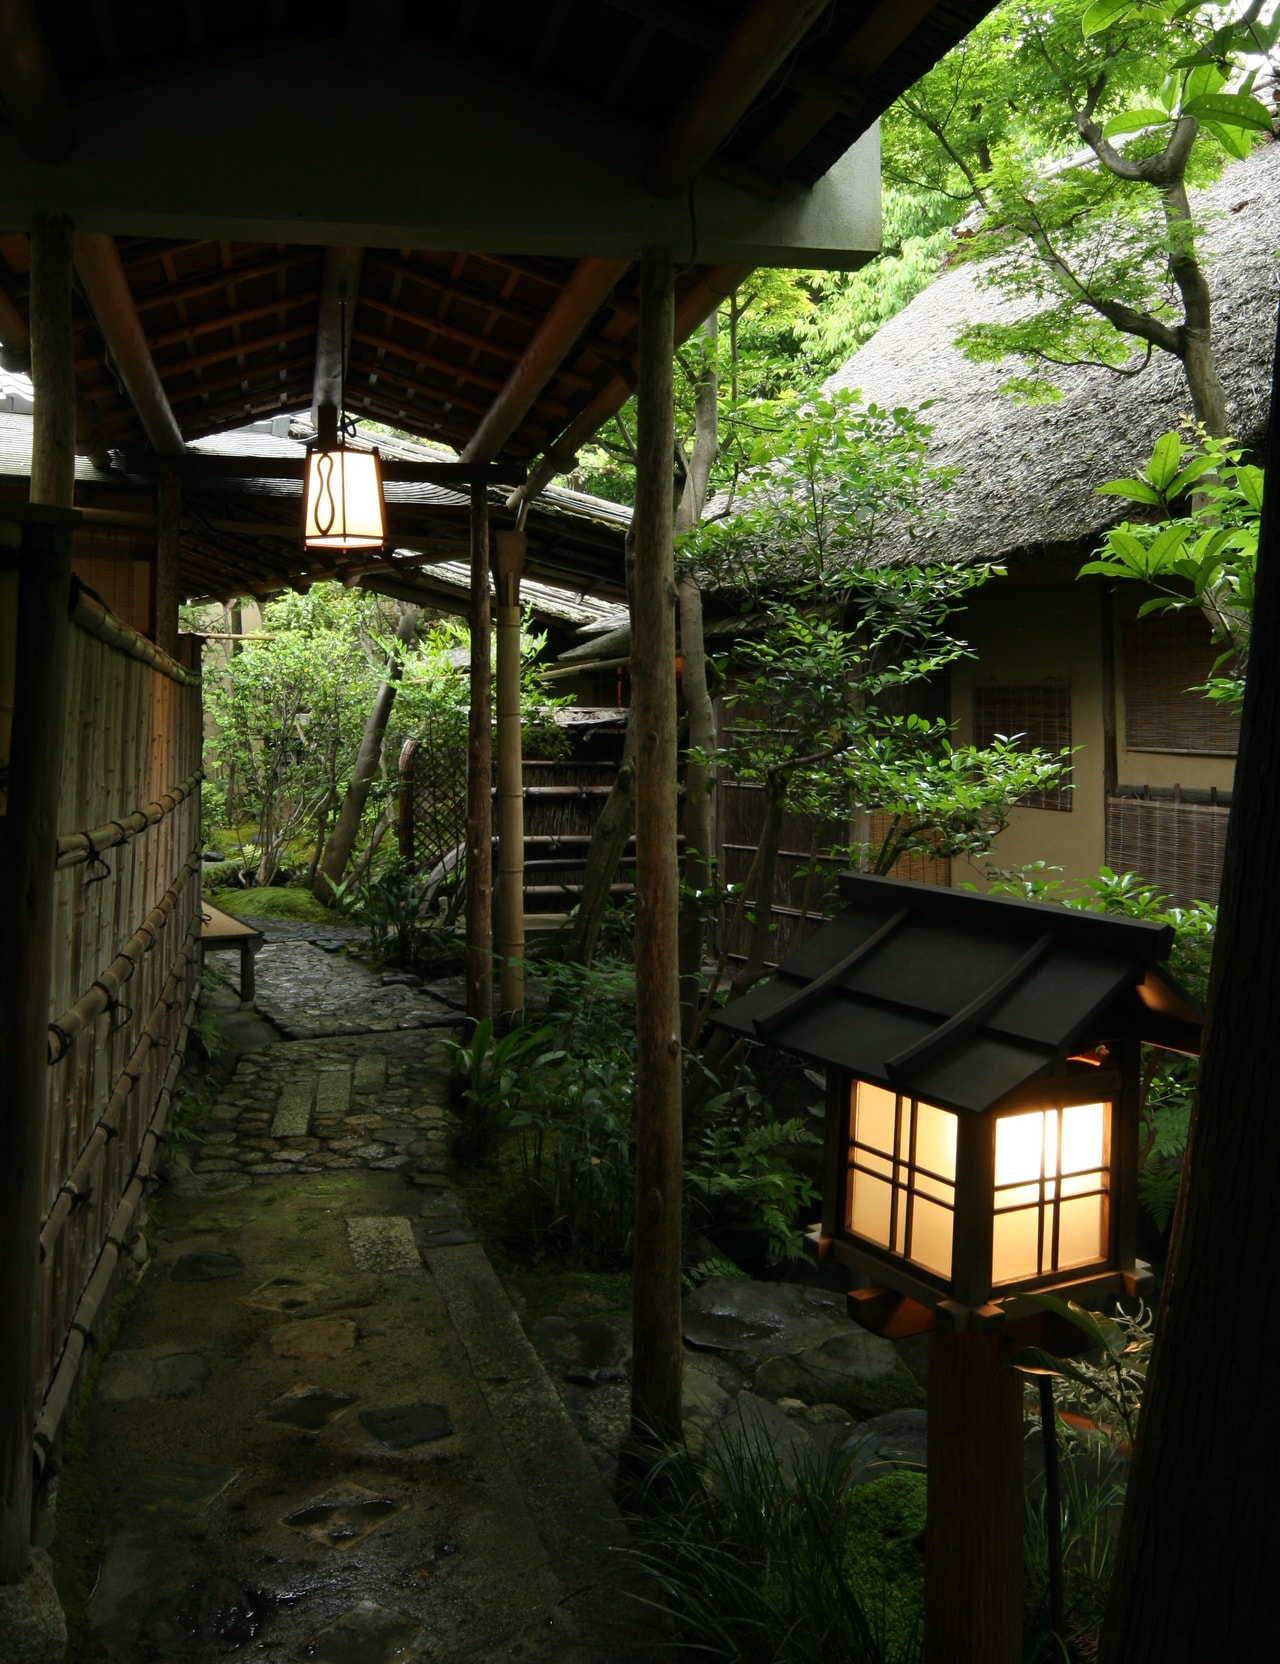 歴史を積み重ねる茶室でのひととき「京都南禅寺畔 瓢亭」 - NIHONMONO